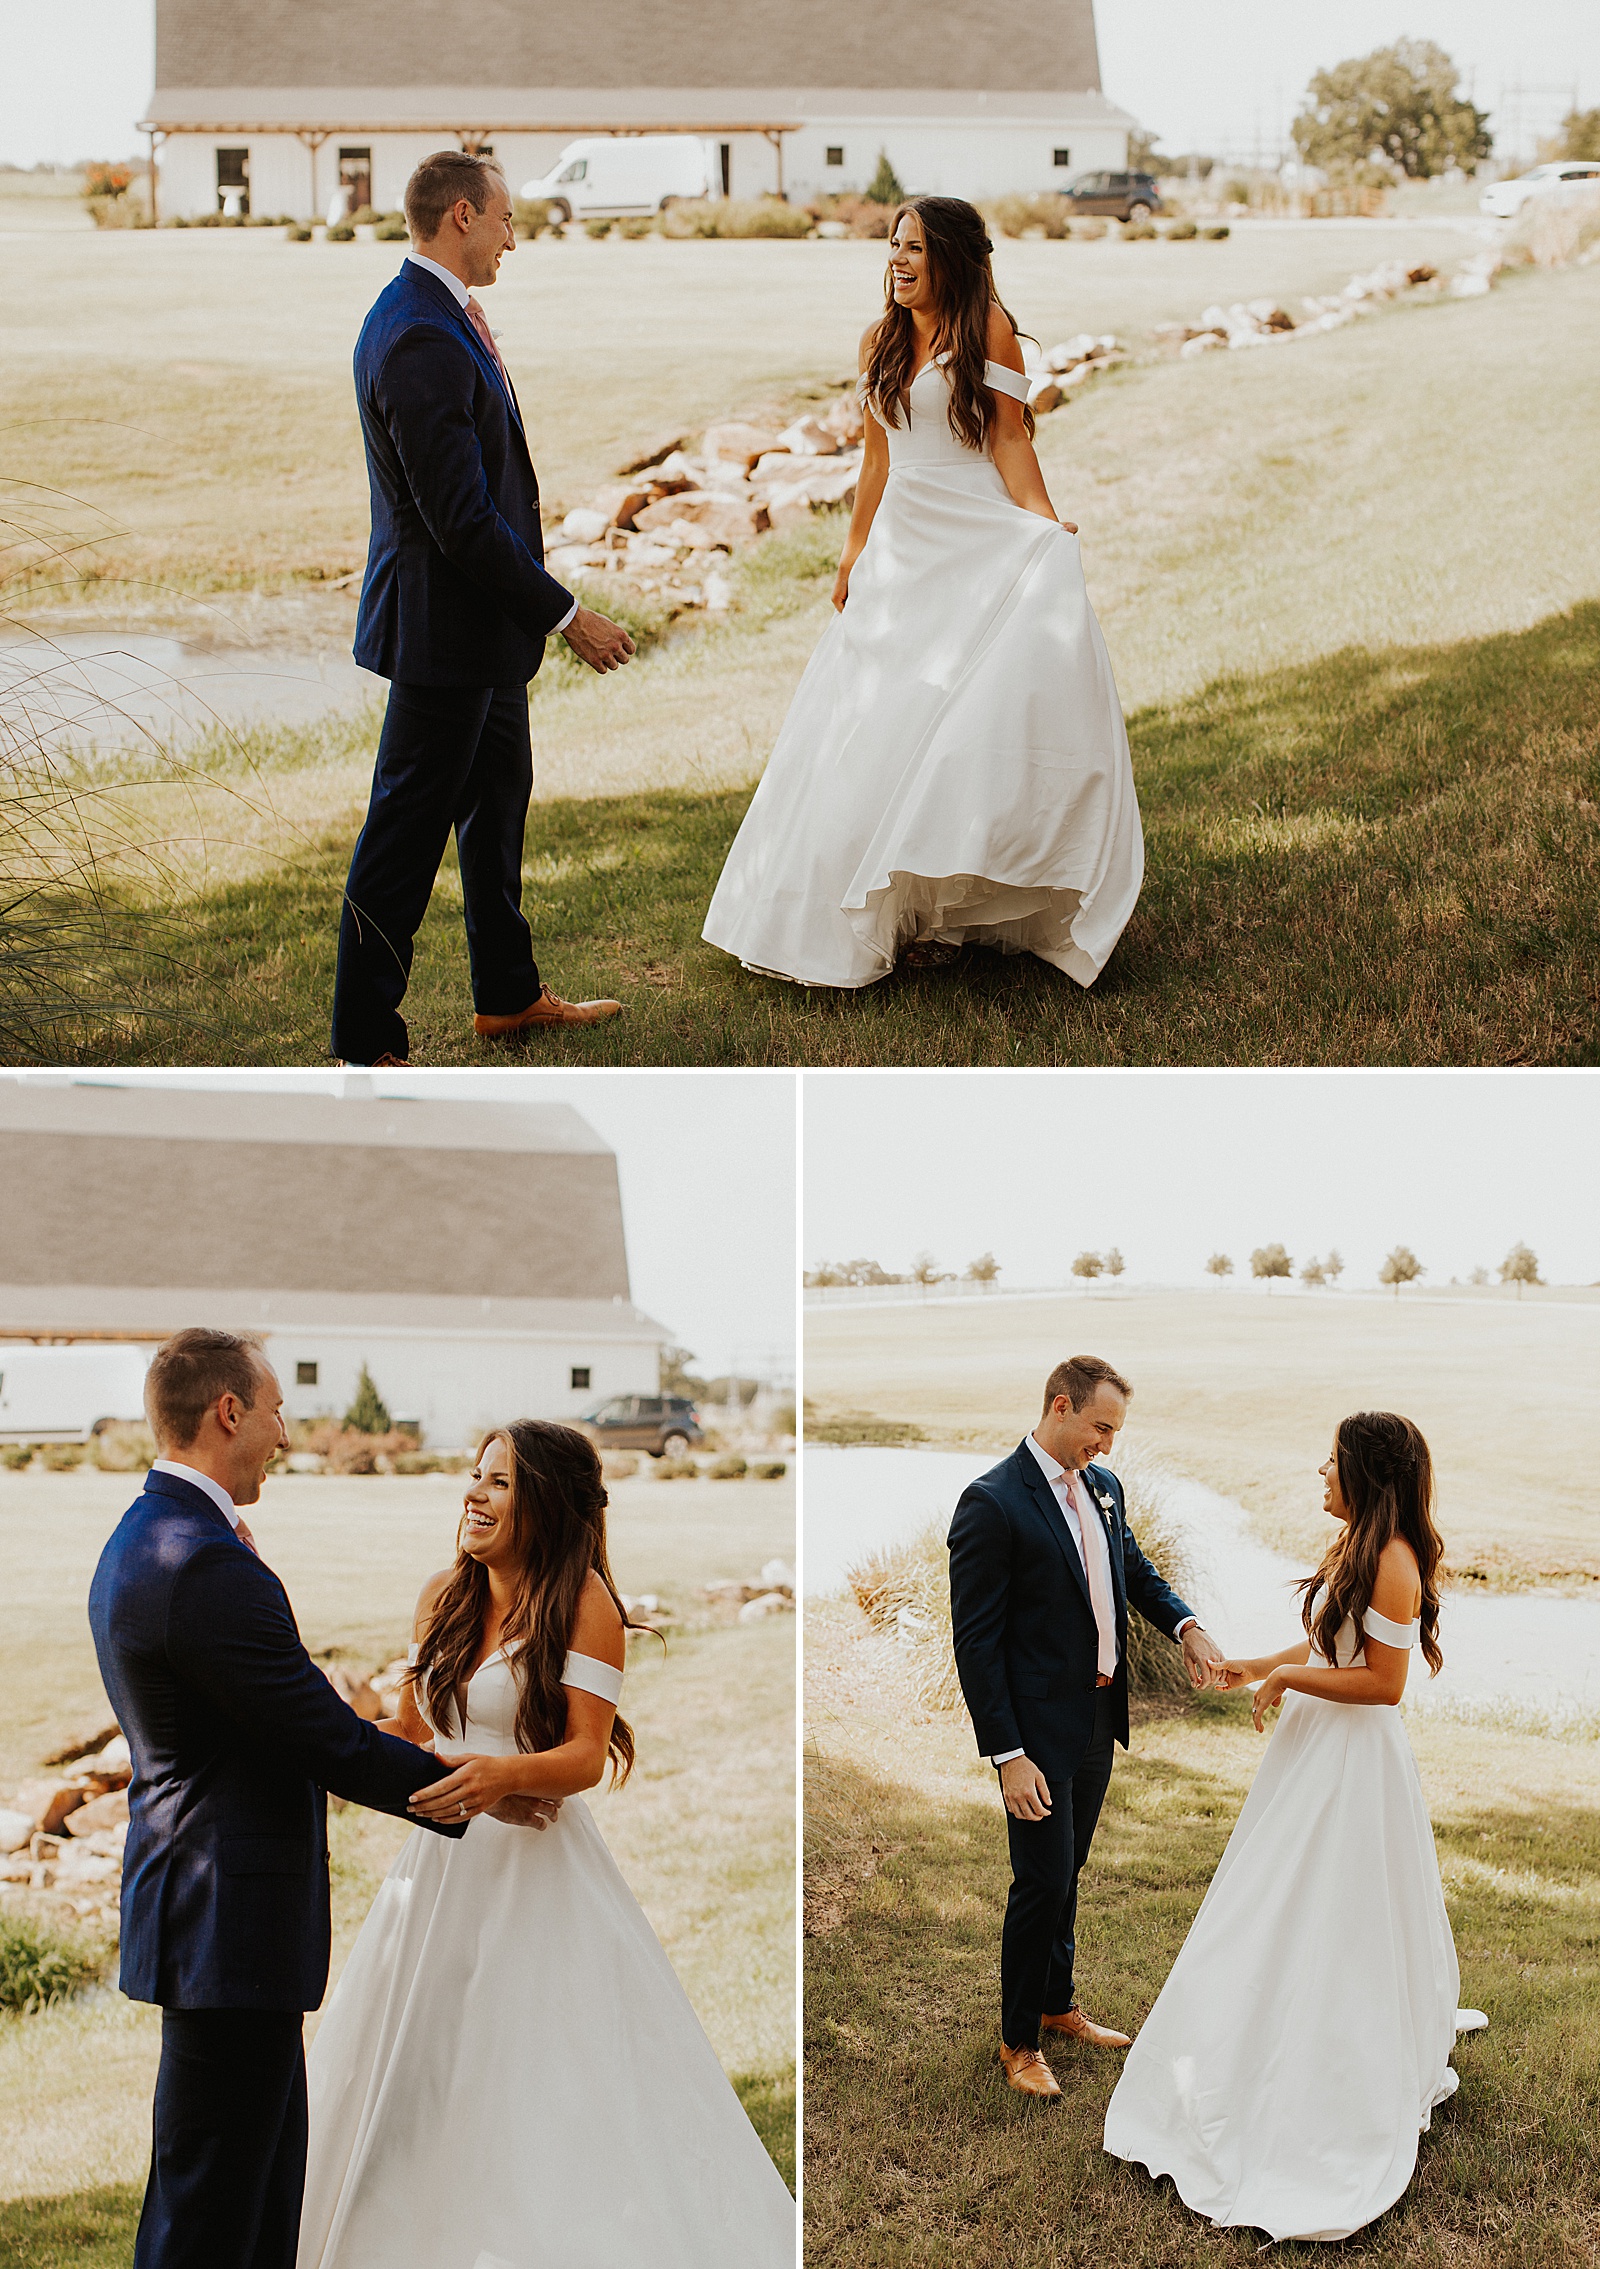 Adorable bride and groom first look at the Morgan Creek Barn wedding venue in the Dallas, TX area.